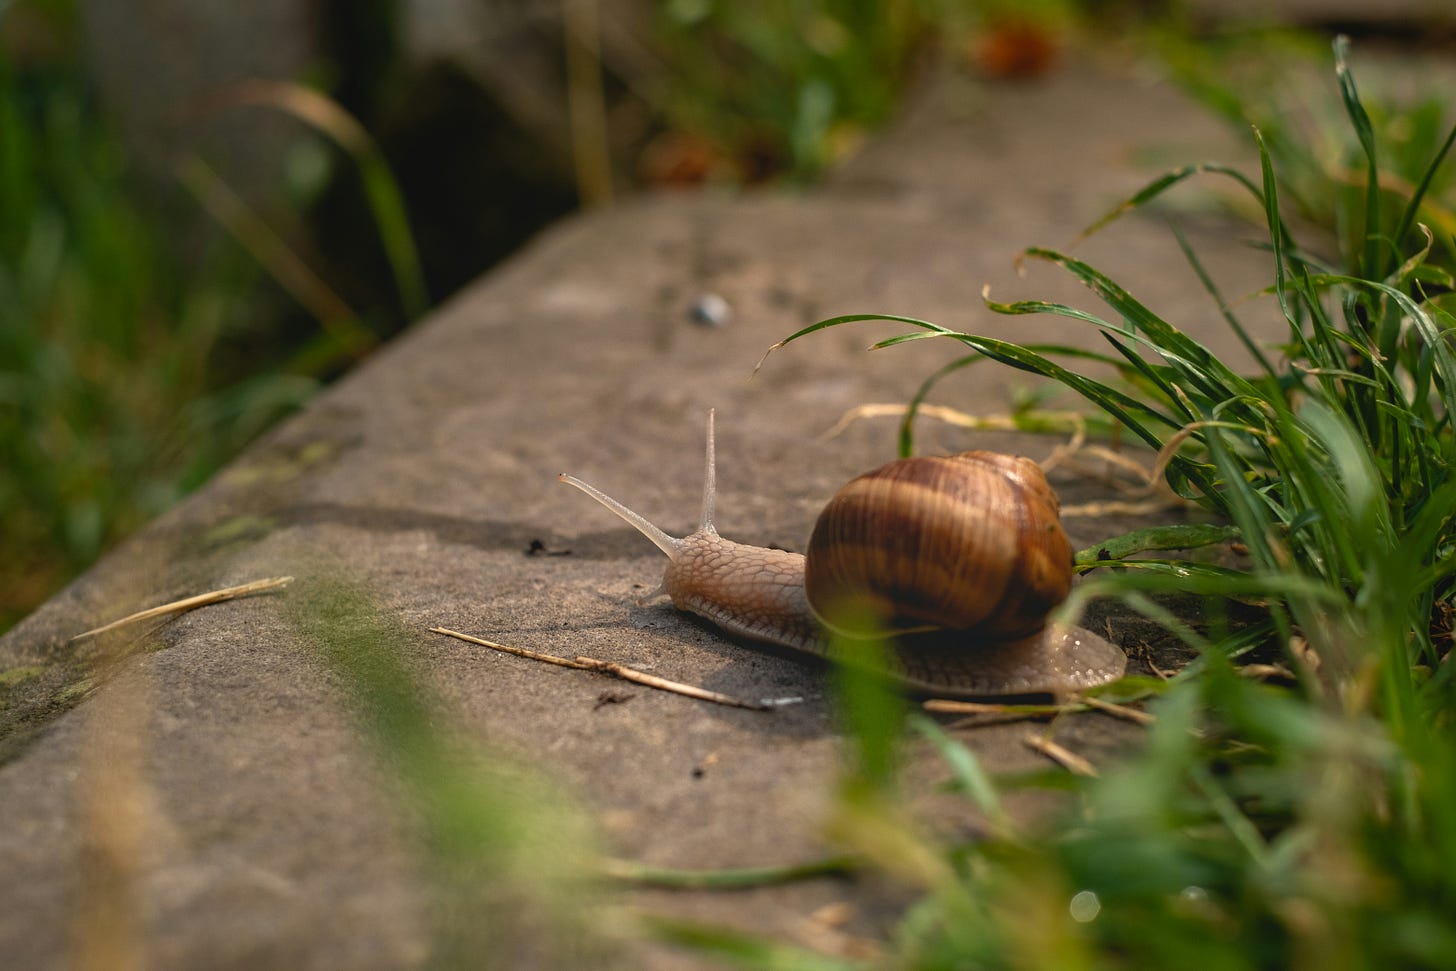 a garden snail